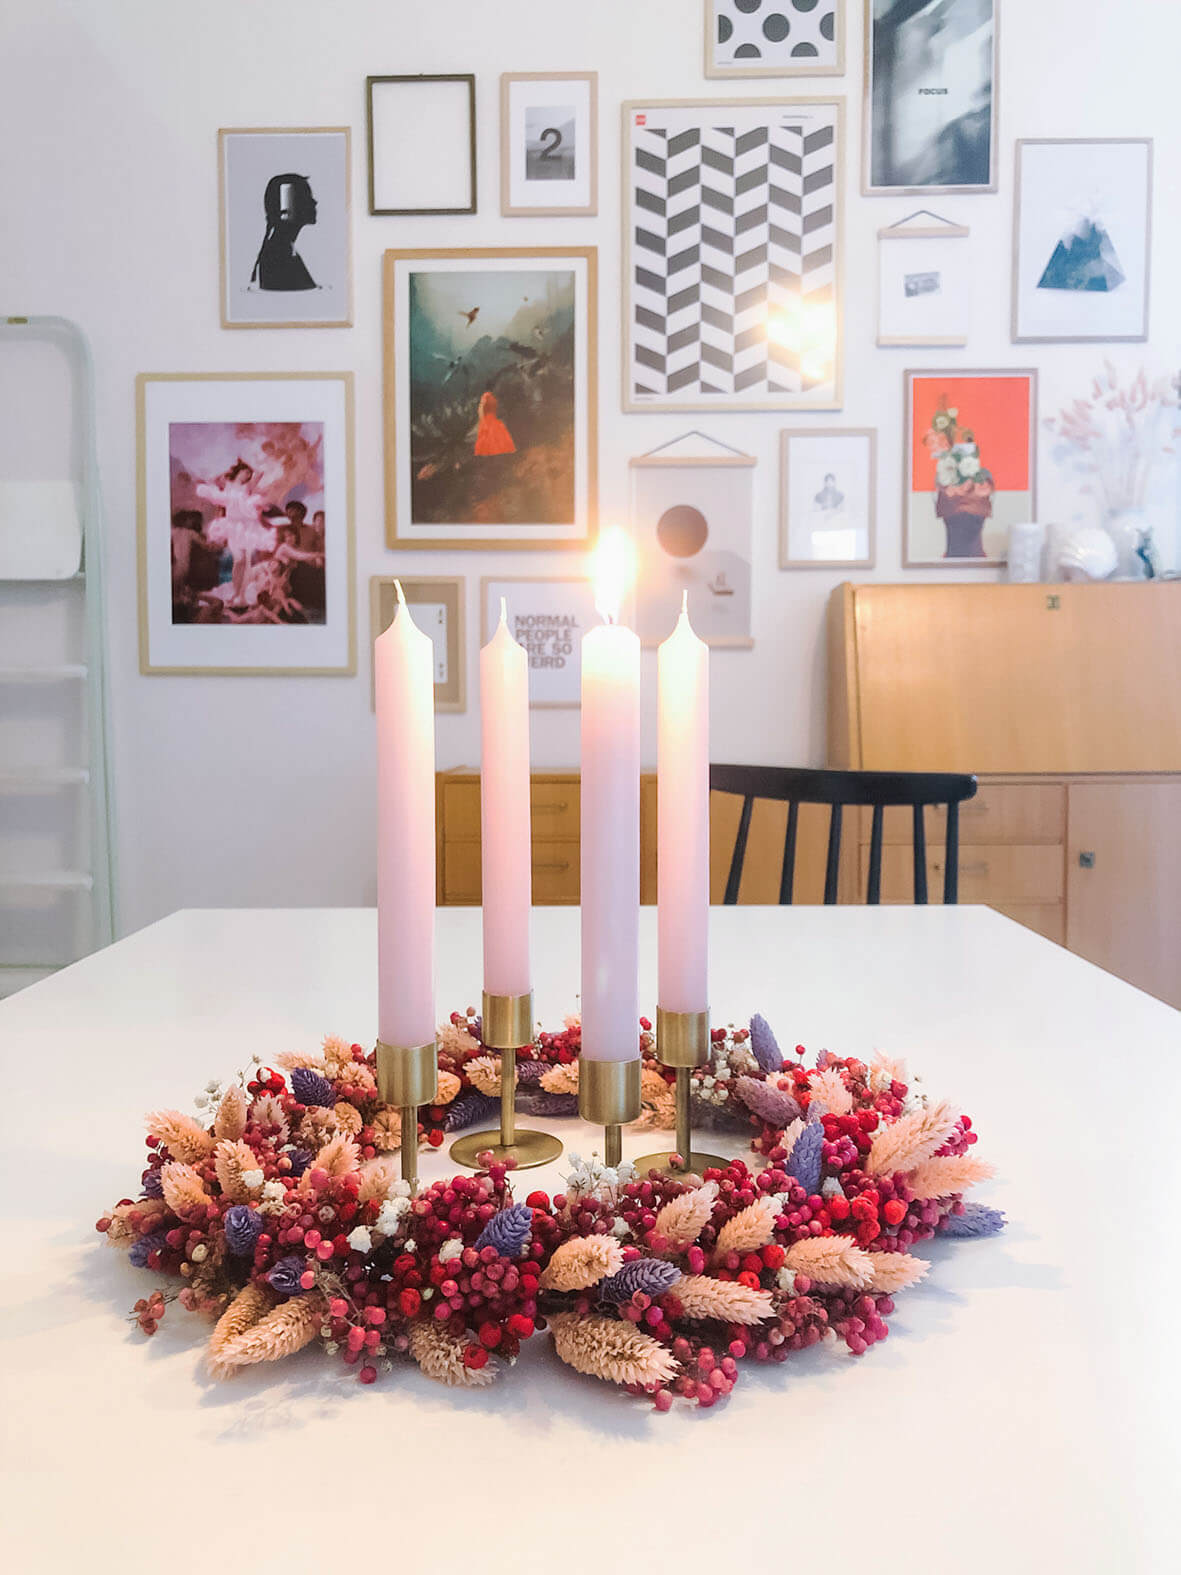 Der farbenfrohe Adventskranz liegt mittig auf dem weißen Esstisch. Die erste Kerze ist entzündet. Im Hintergrund ist eine Bilderwand zu sehen.